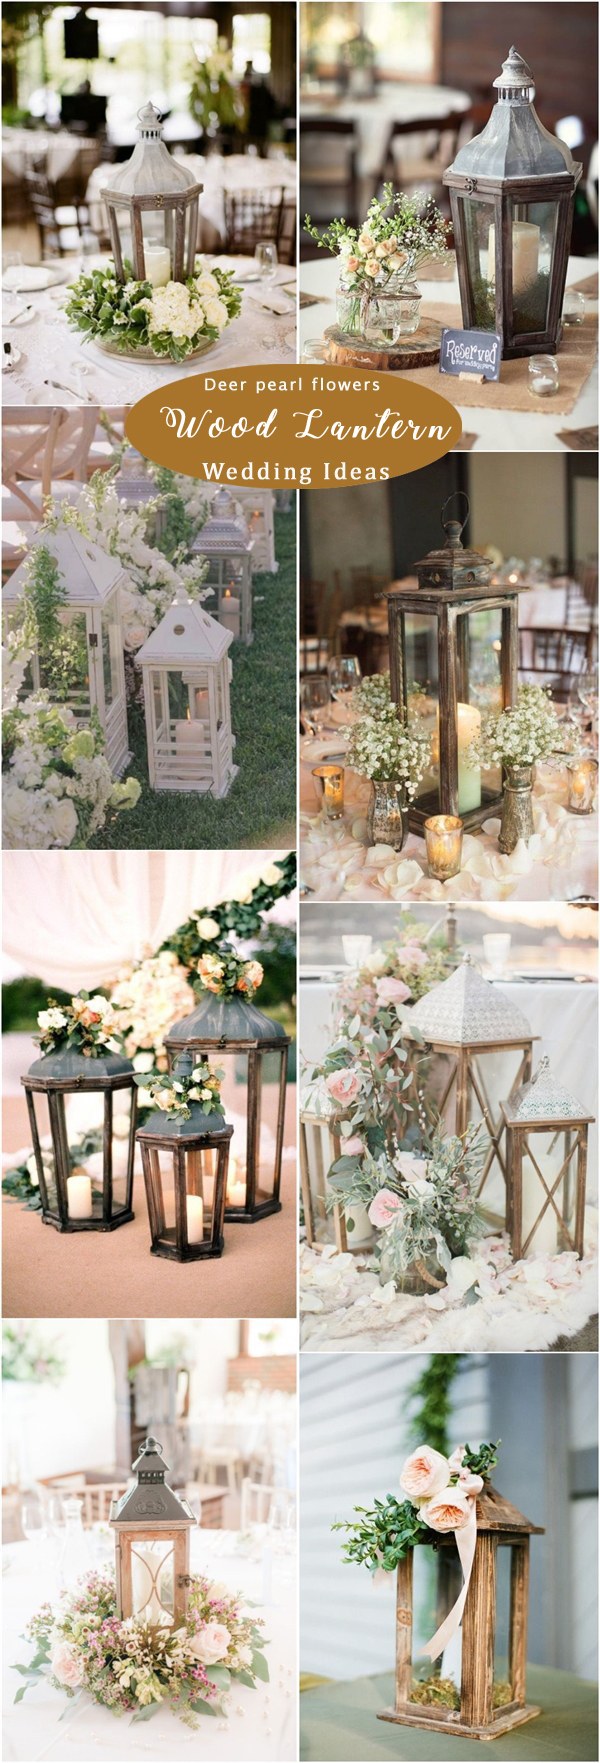 Rustic wood lantern wedding decor ideas